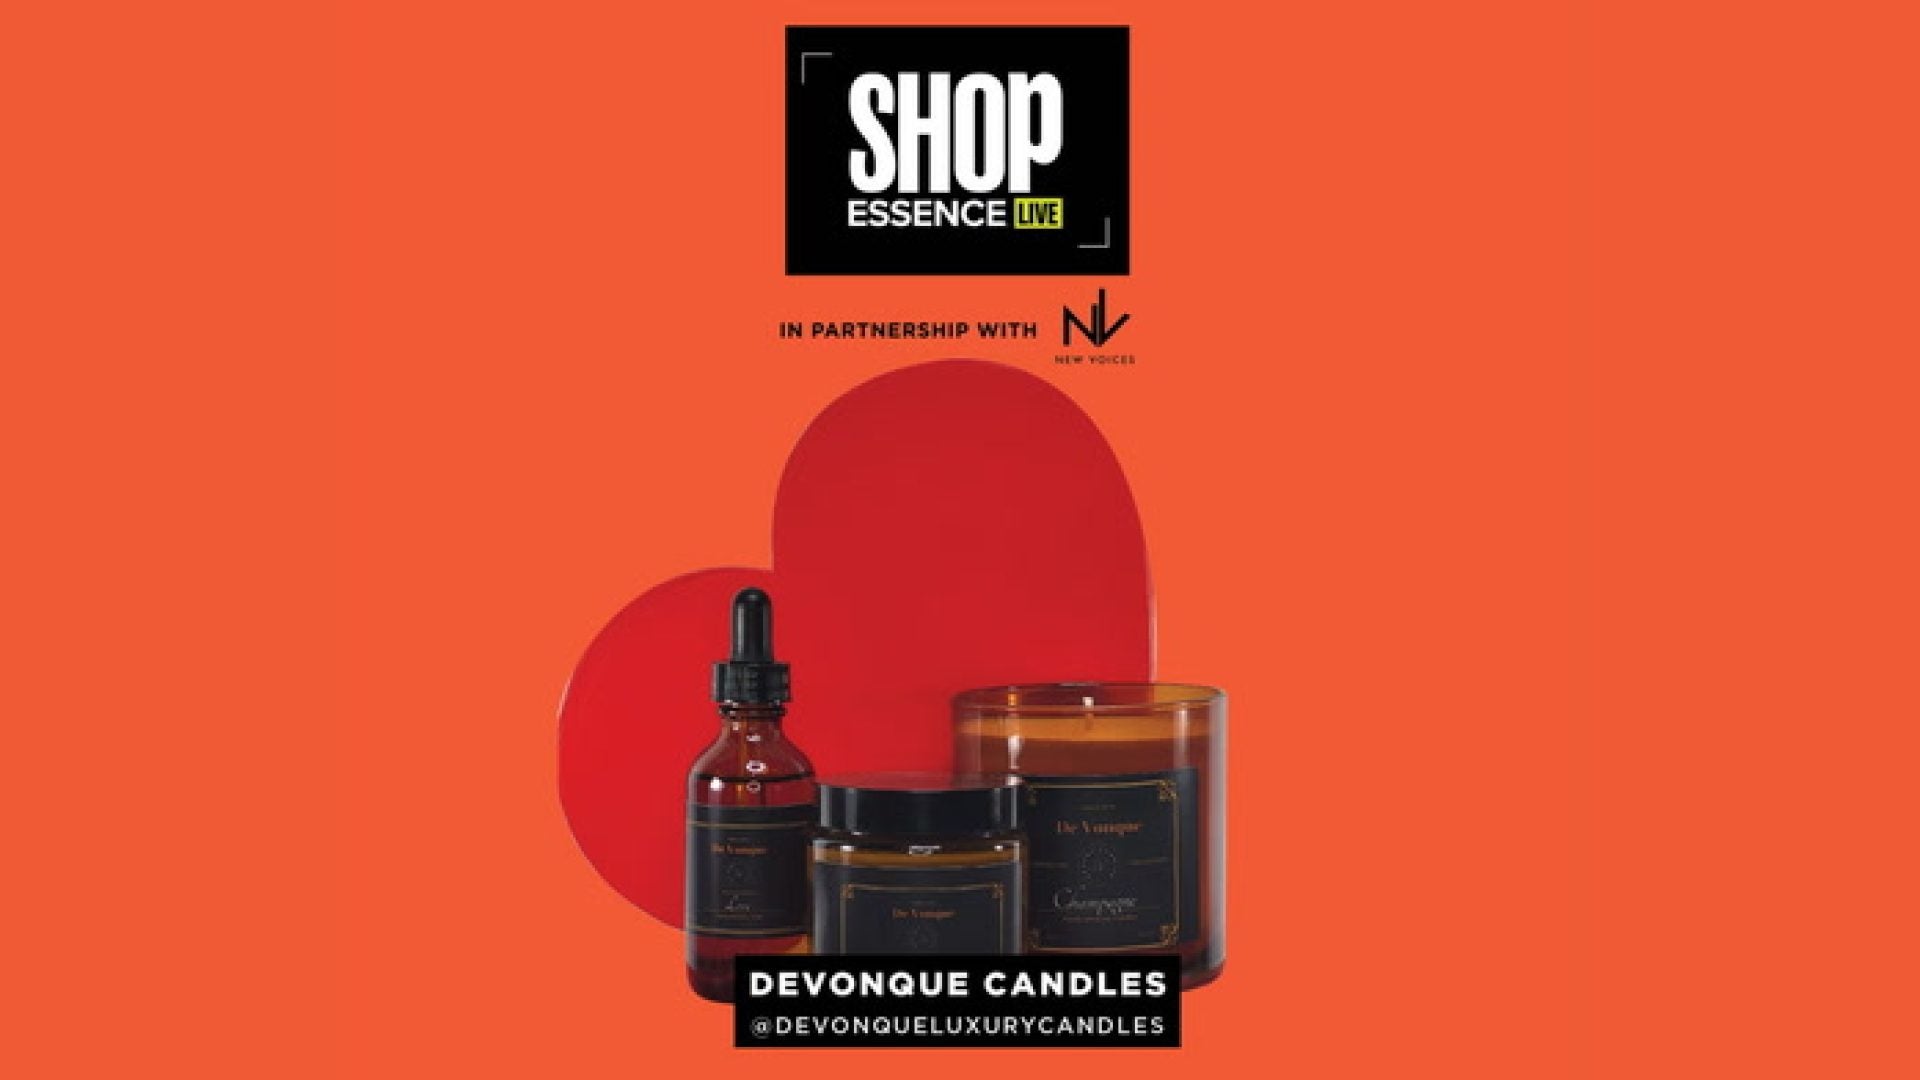 WATCH: Shop Essence Live – DeVonque Candles